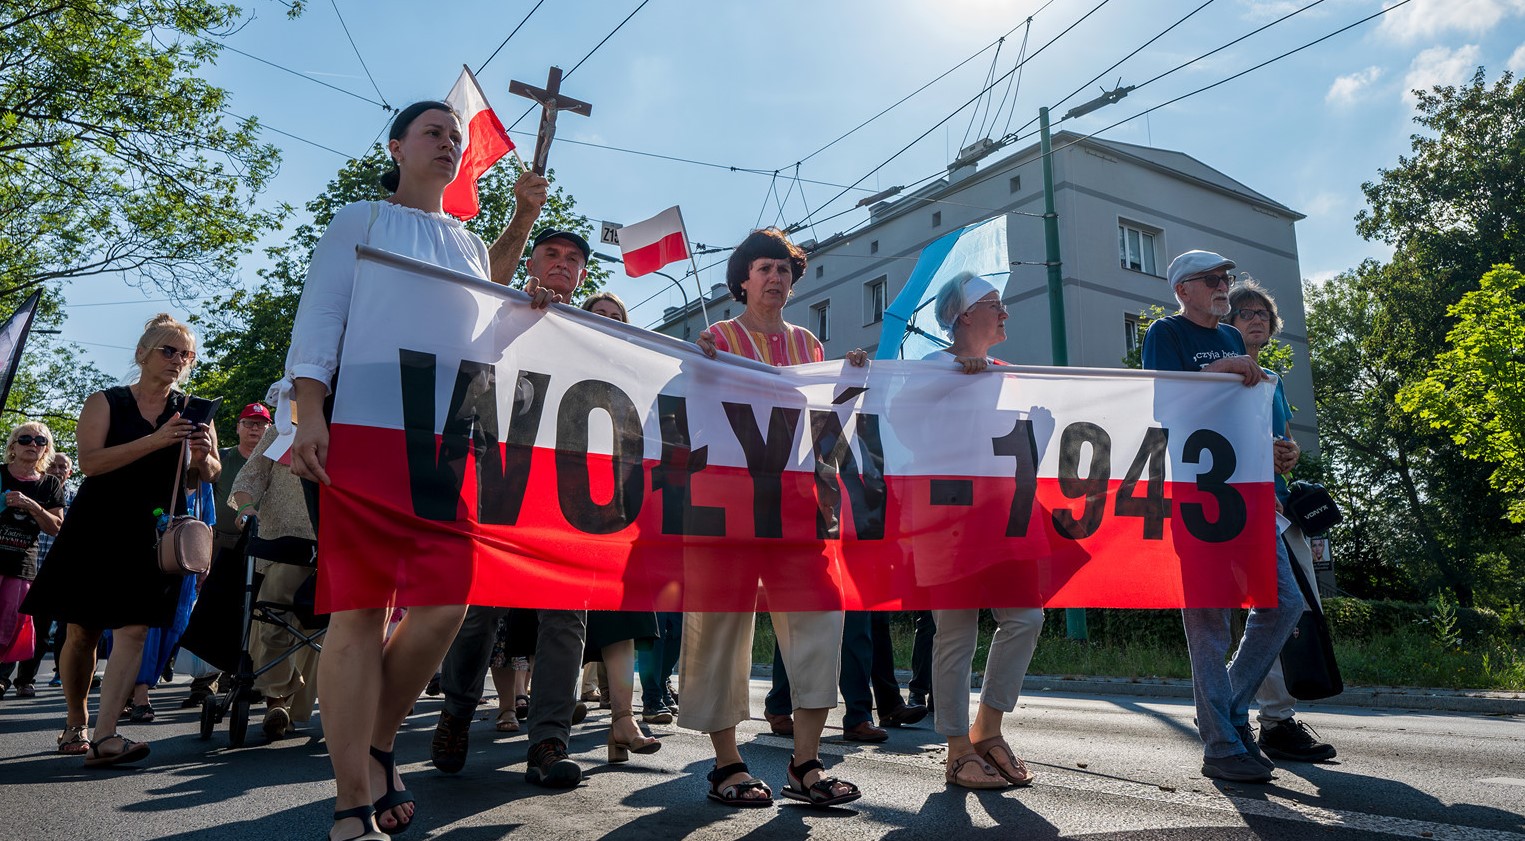 Polska nie pozwoli Ukrainie przystąpić do UE, dopóki nie zostanie rozwiązana kwestia masakry podczas II wojny światowej – powiedział wicepremier.